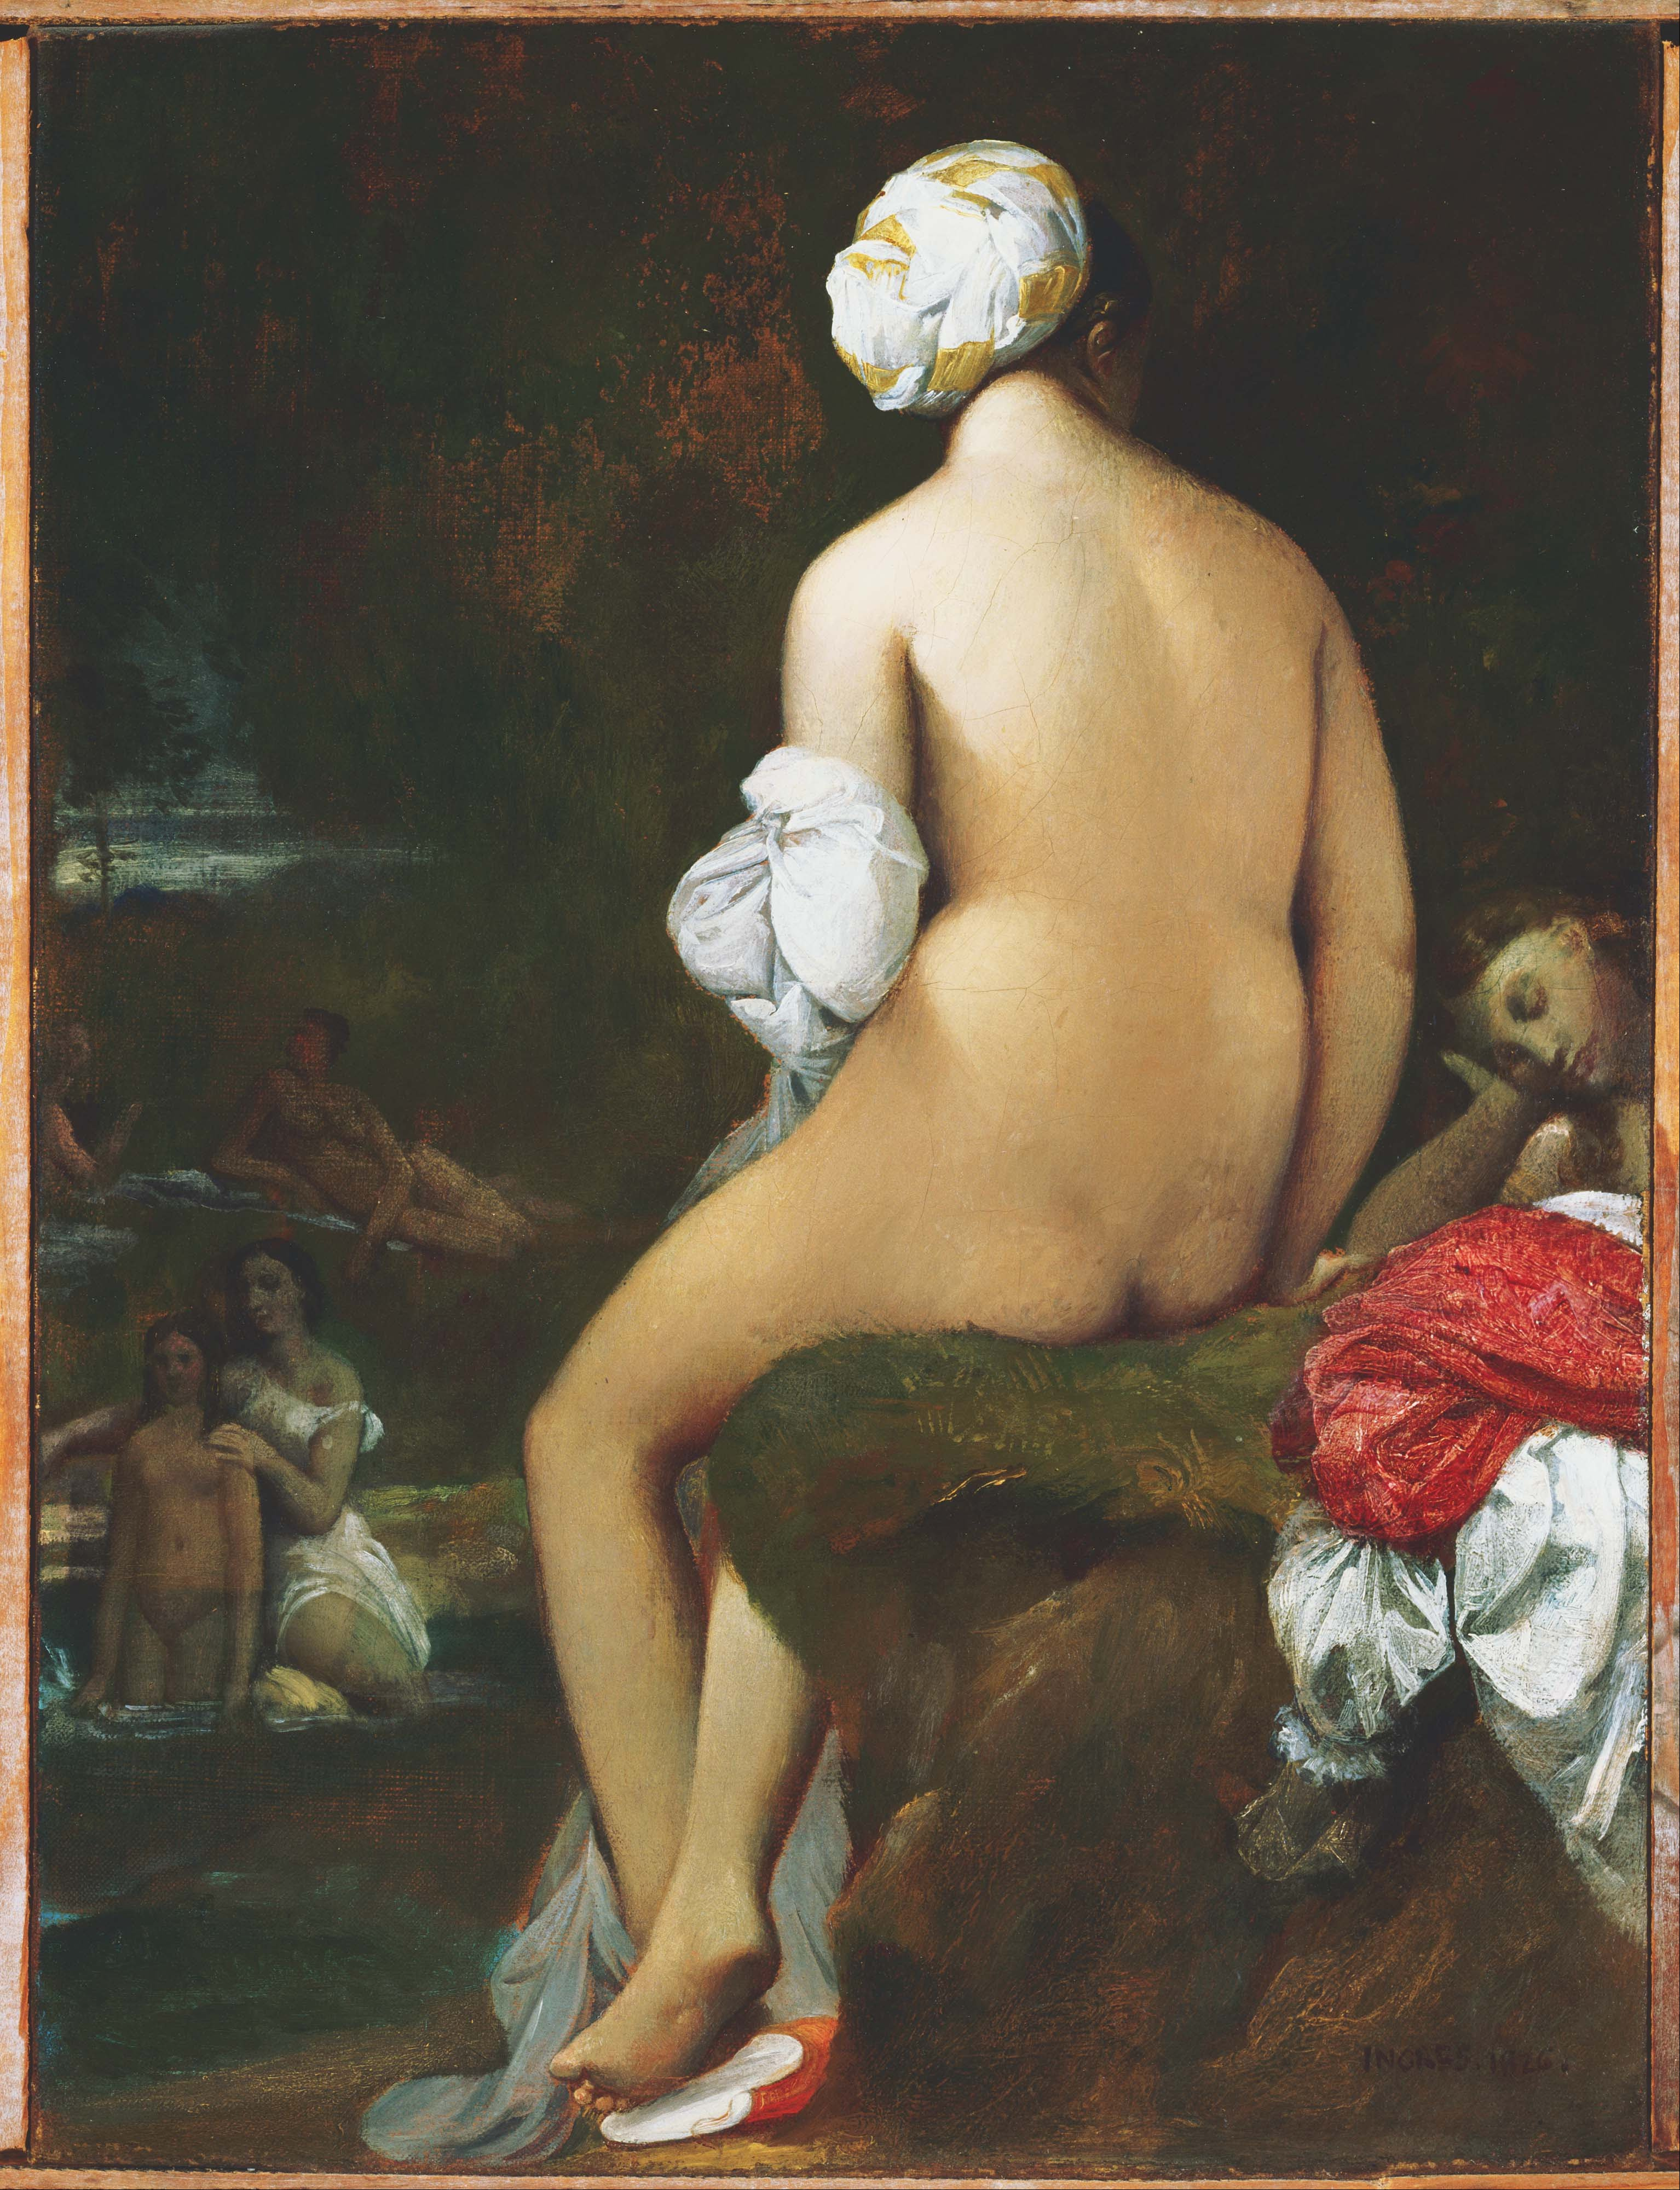 La piccola bagnante by Jean-Auguste-Dominique Ingres - 1826 - 25 x 32 cm 